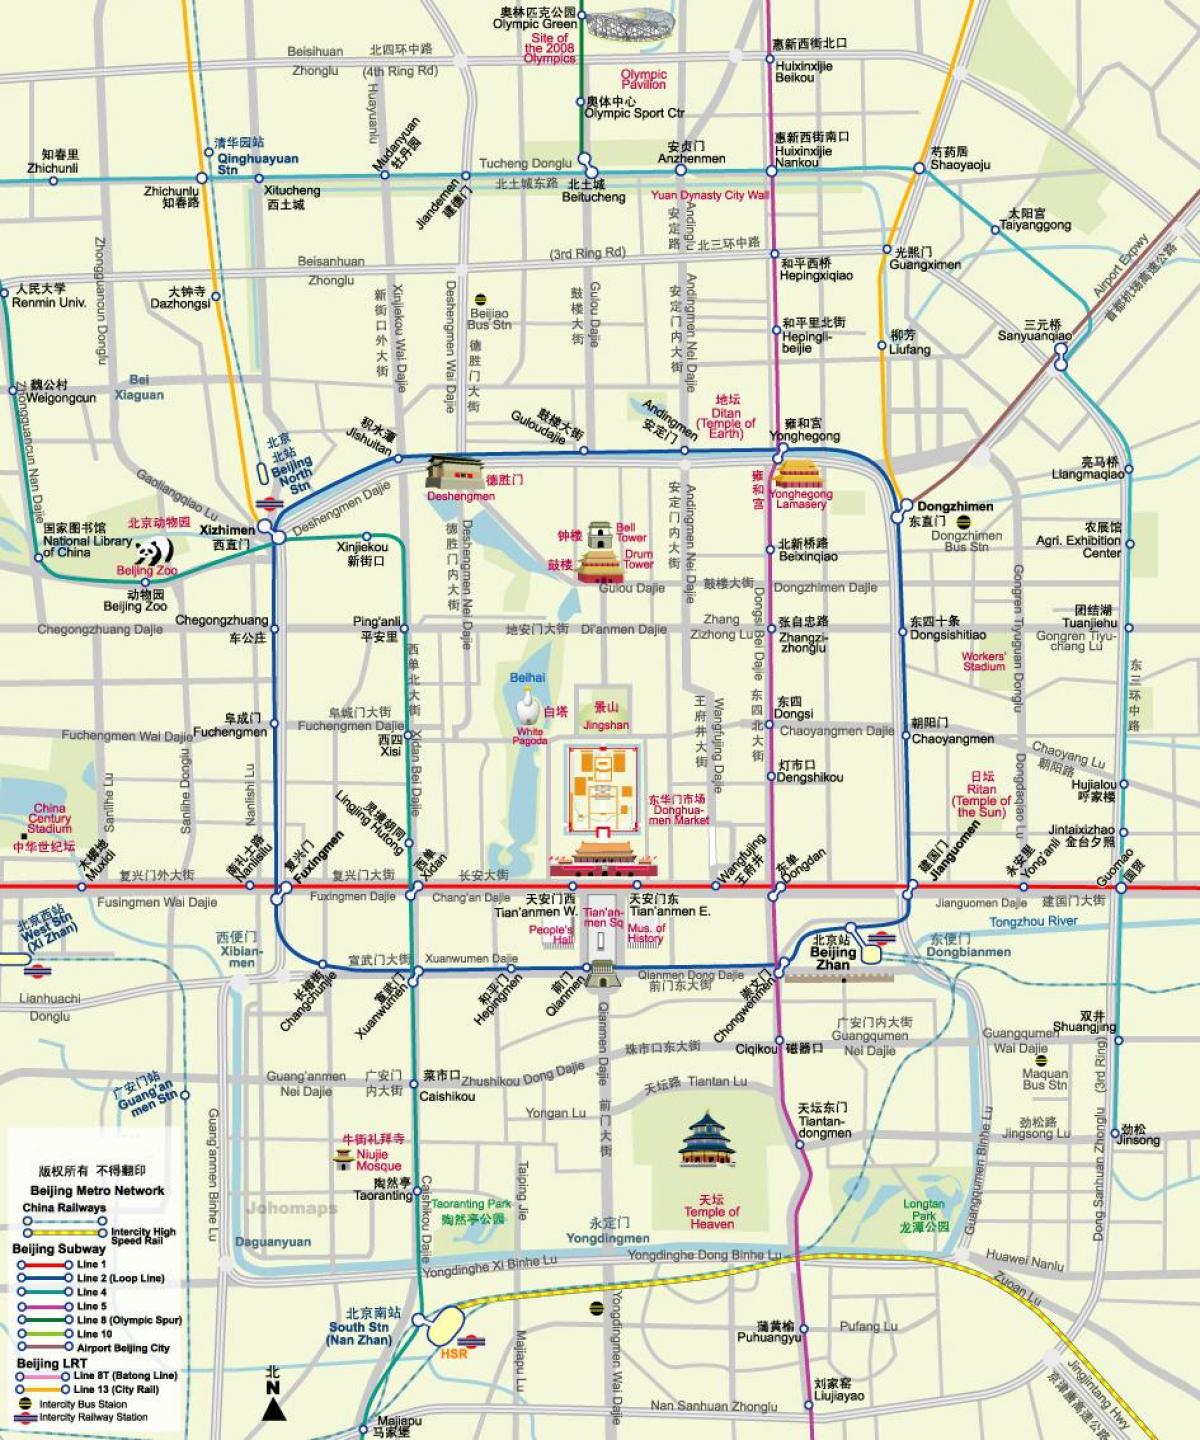 का नक्शा, बीजिंग मेट्रो का नक्शा के साथ पर्यटकों के आकर्षण